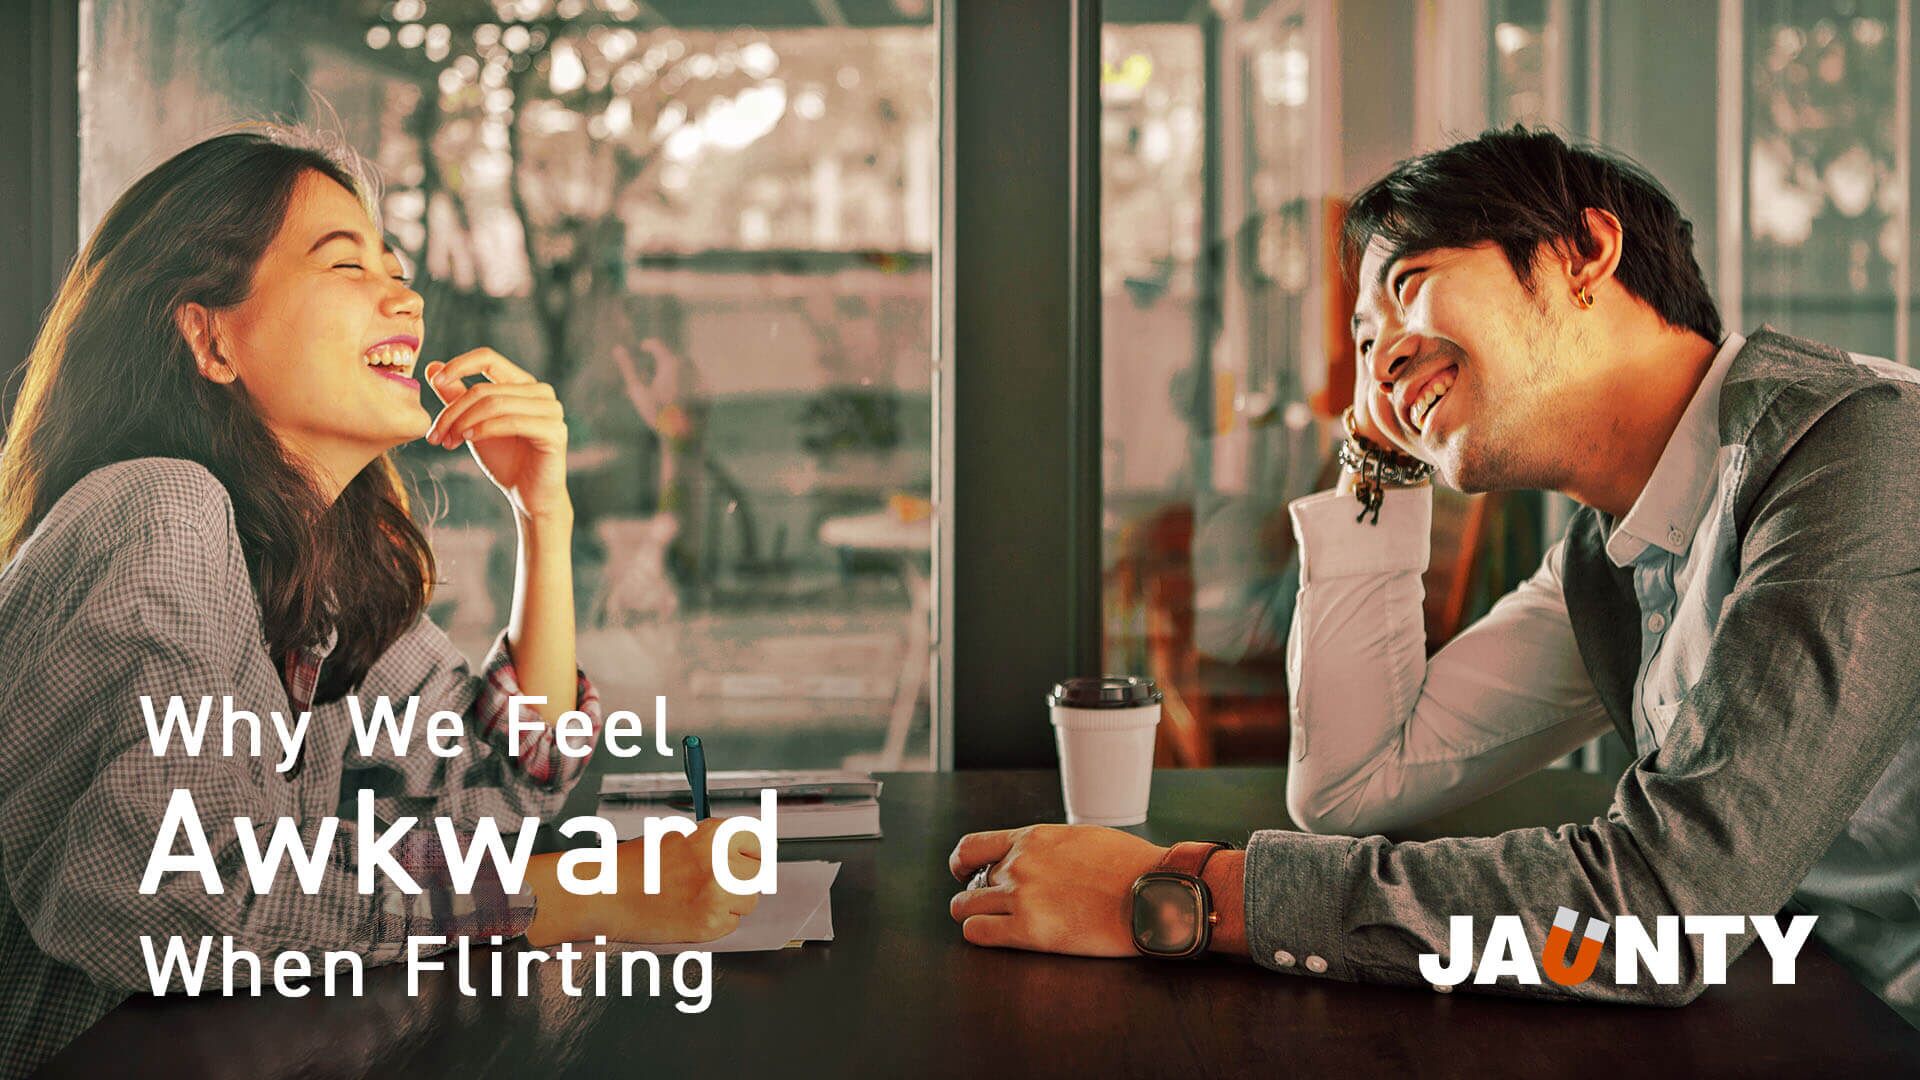 Why does flirting feel so awkward?